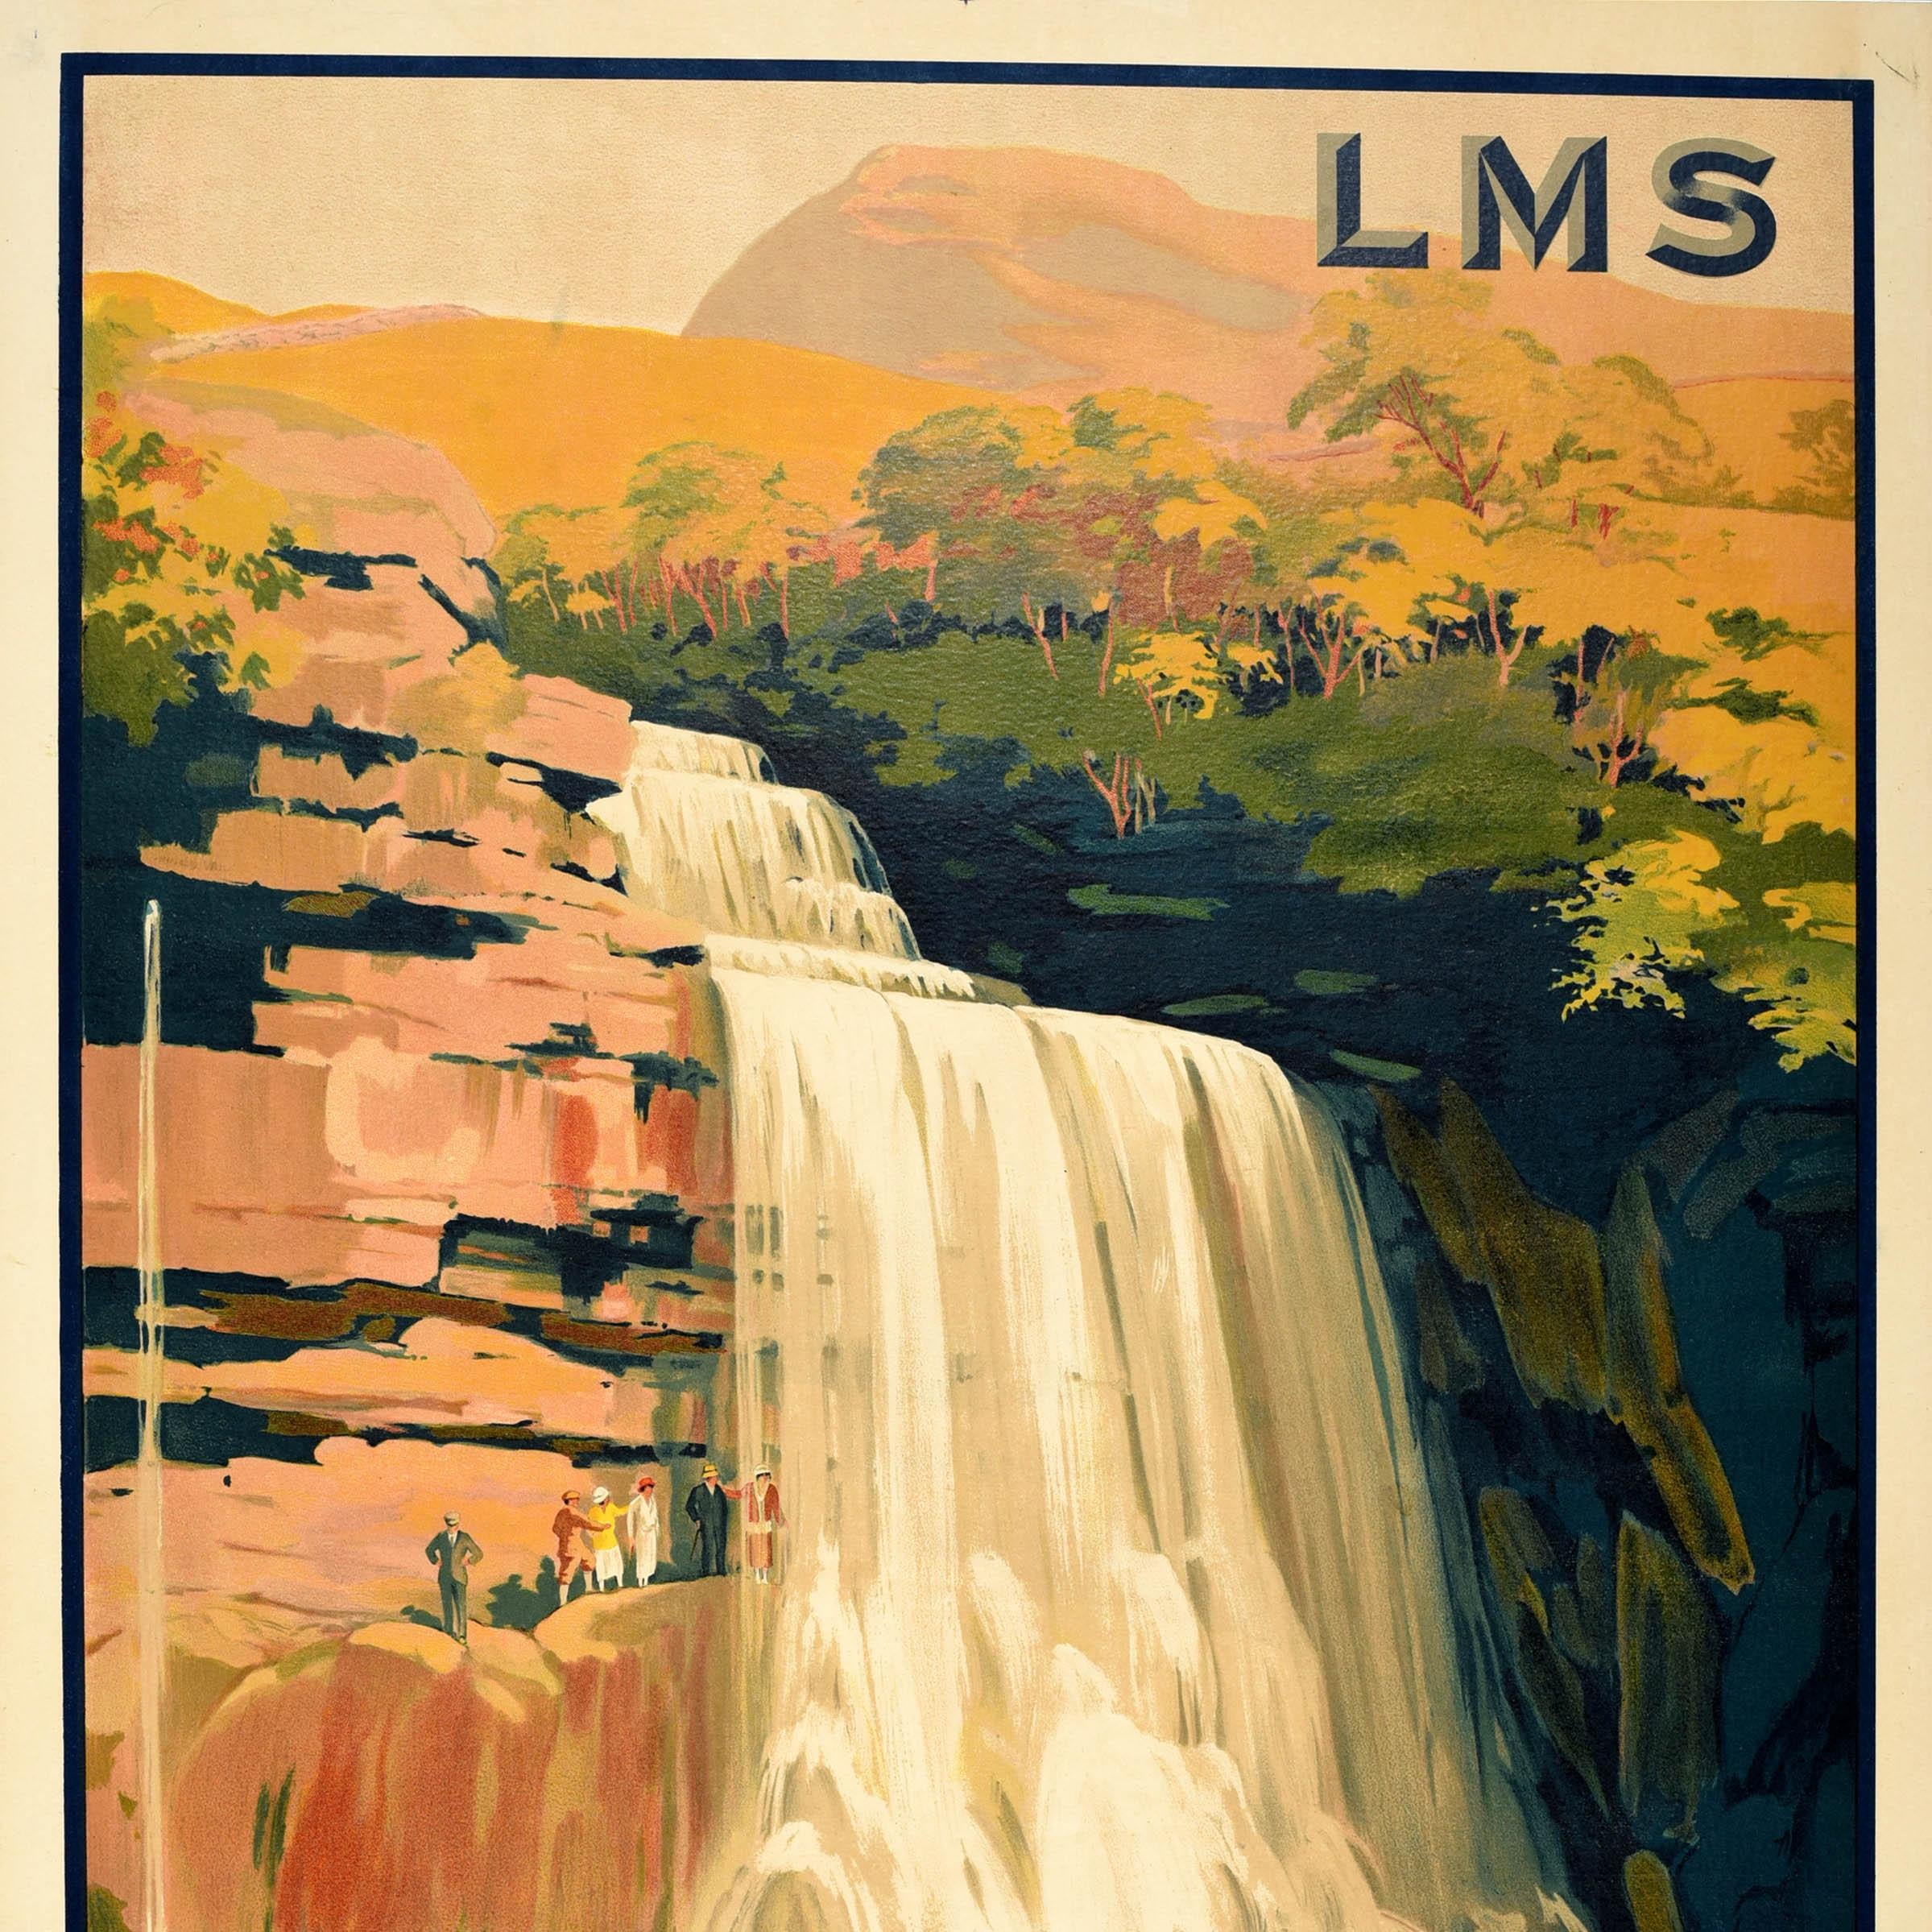 Original-Vintage-Reiseplakat der Eisenbahn Ingleton Land der Wasserfälle, LMS Whatley, LMS Whatley (Britisch) im Angebot